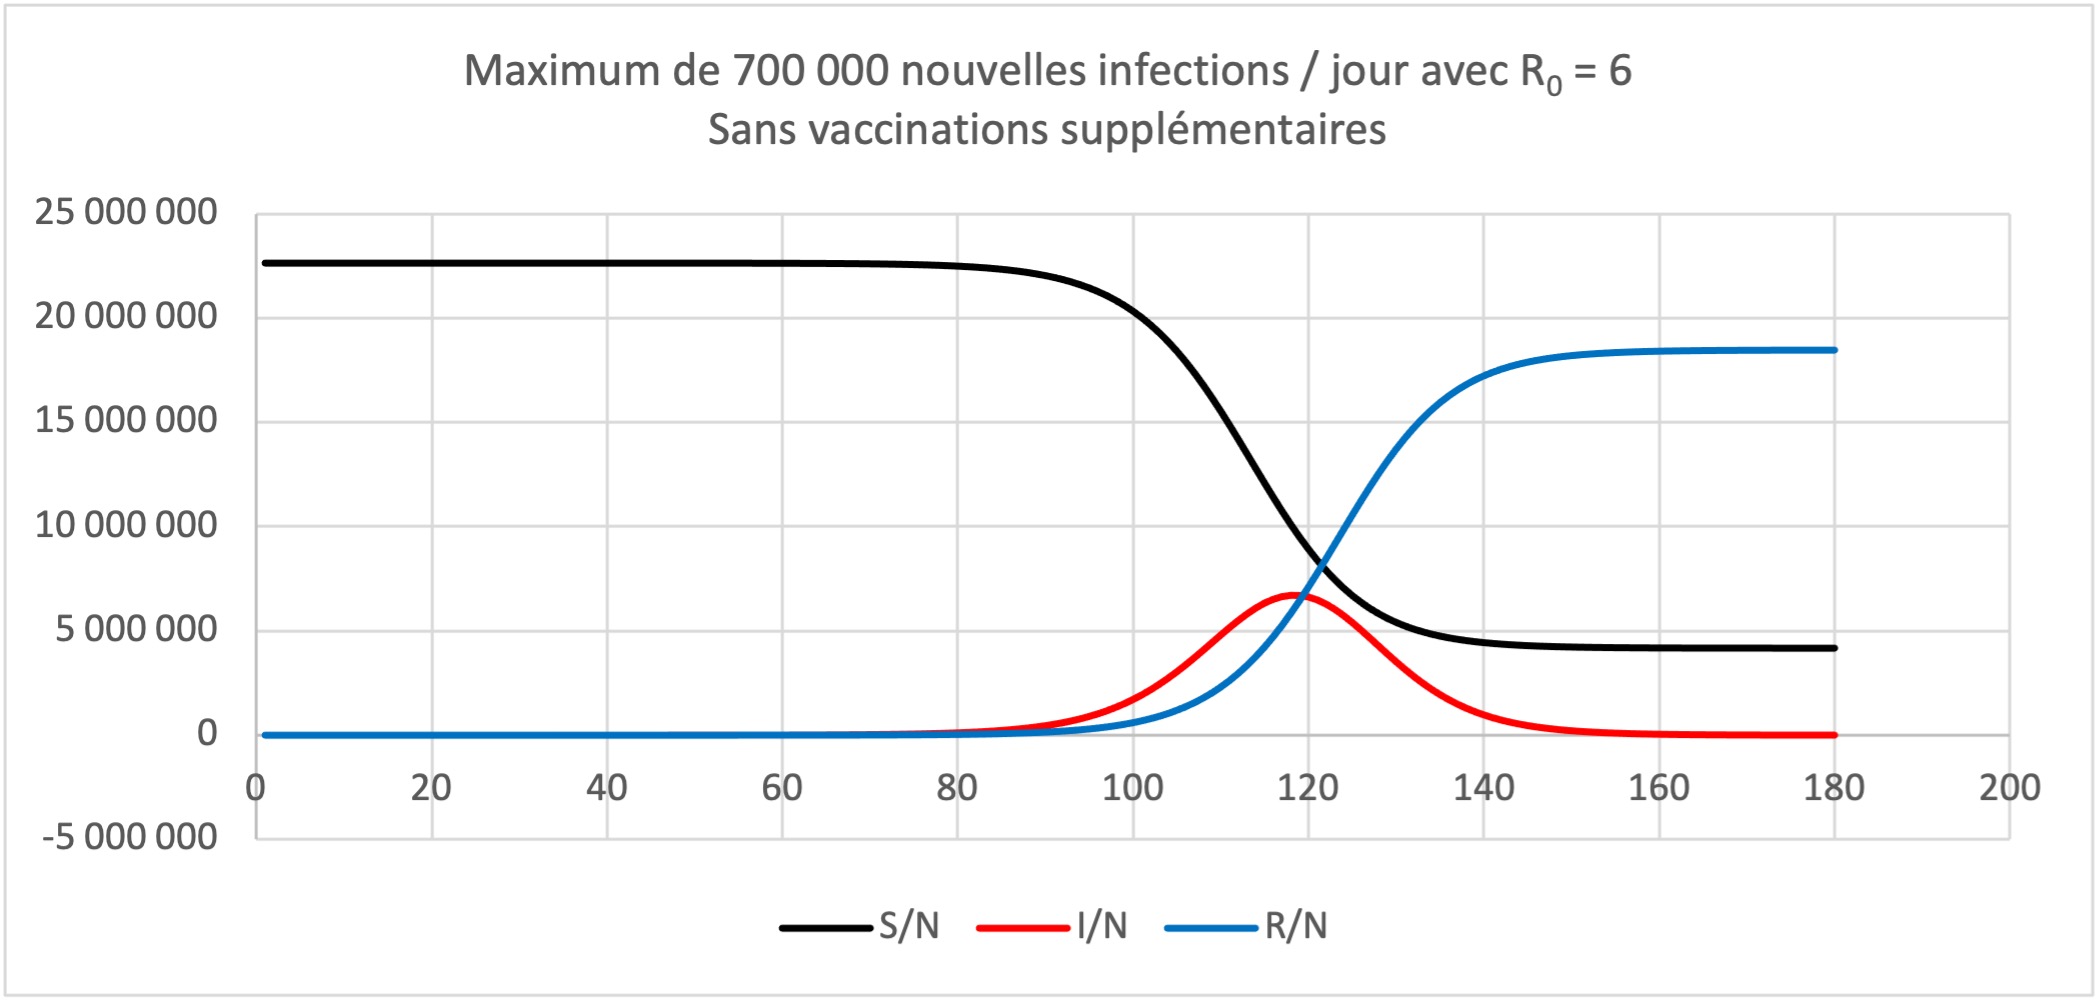 Maximum de 700 000 nouvelles infections / Jour